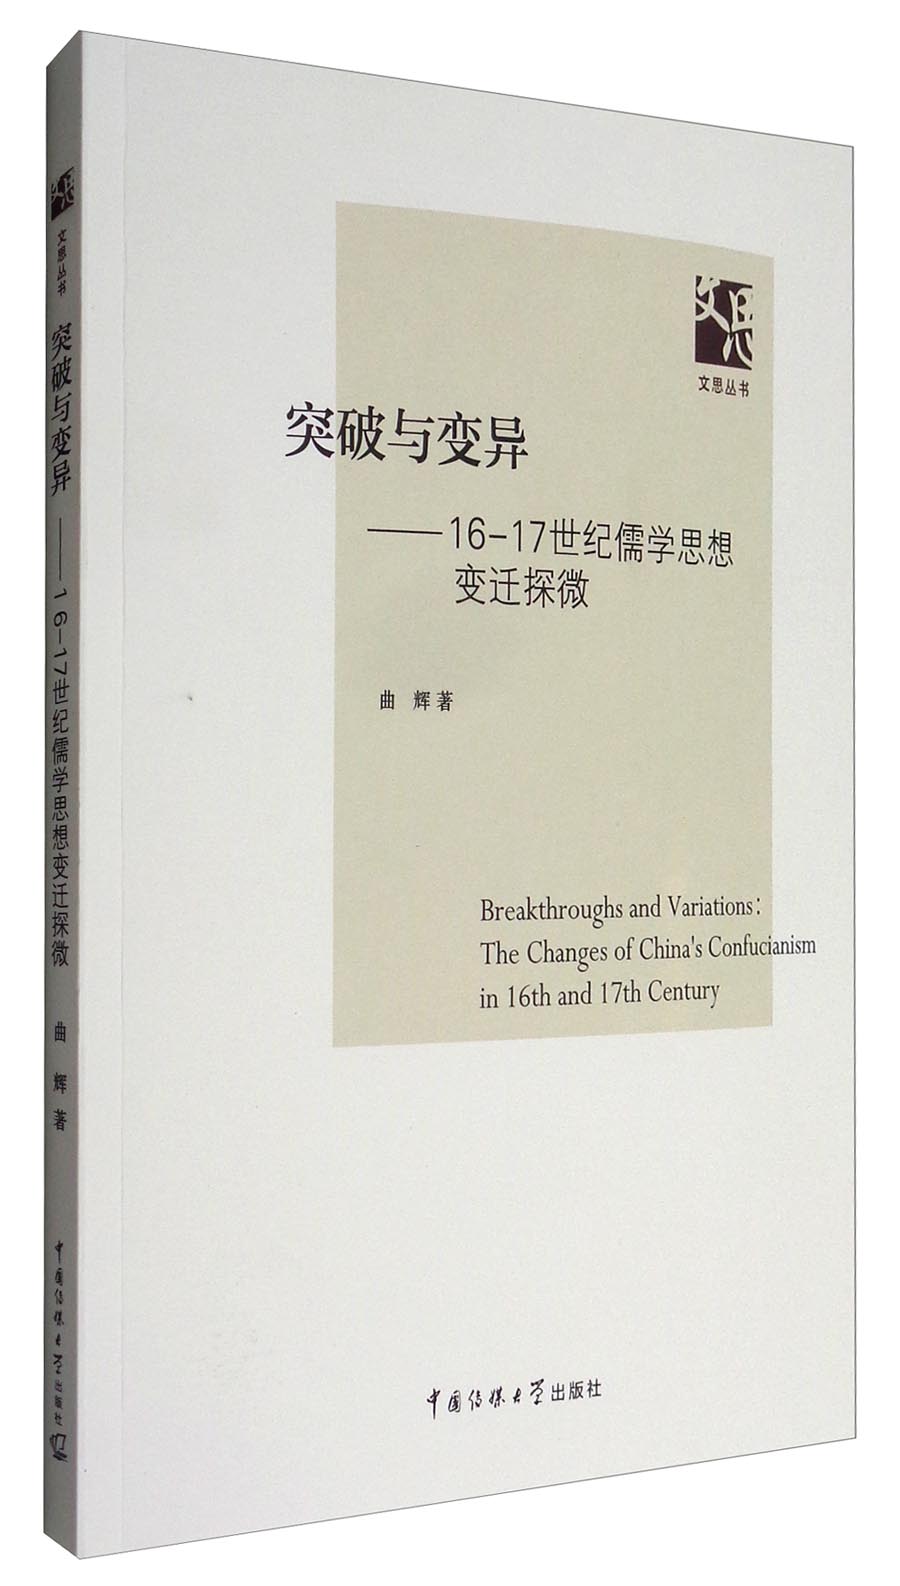 文思丛书 突破与变异：16-17世纪儒学思想变迁探微 epub格式下载